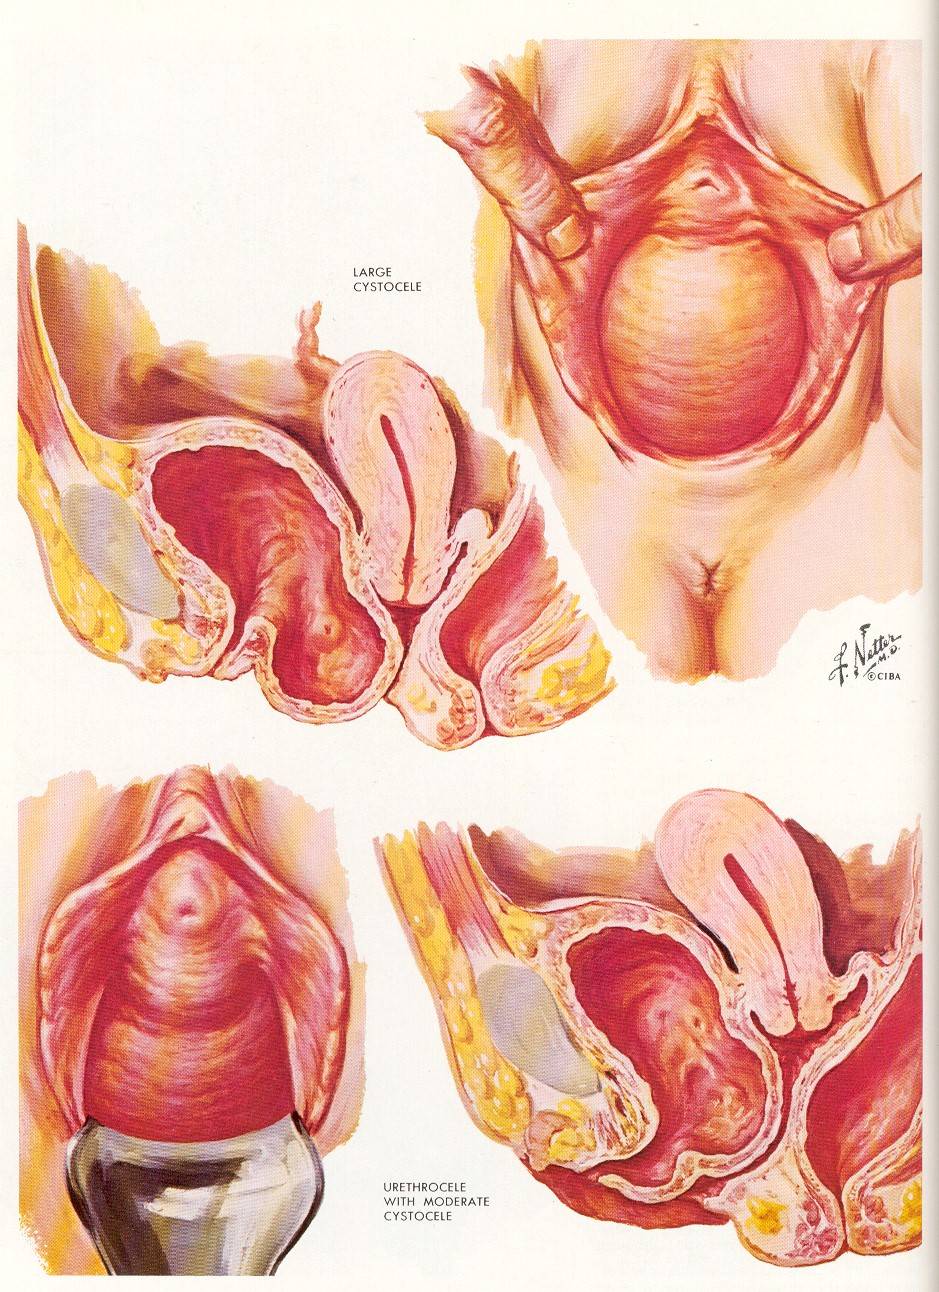 рак матки от спермы фото 60